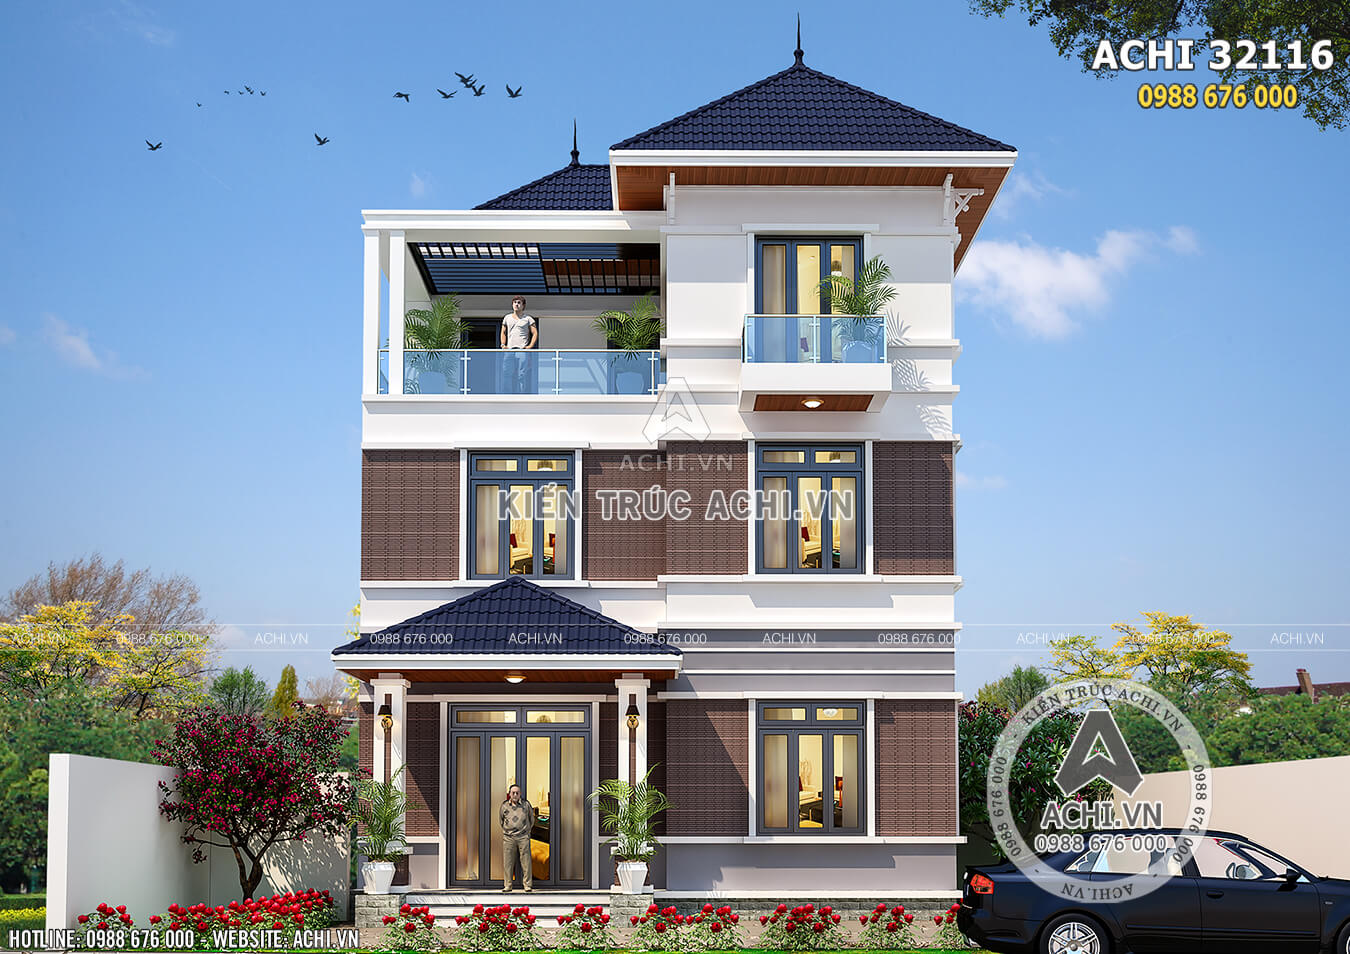 Biệt thự mái thái hiện đại 3 tầng đẹp tại Hà Nội – ACHI 32116